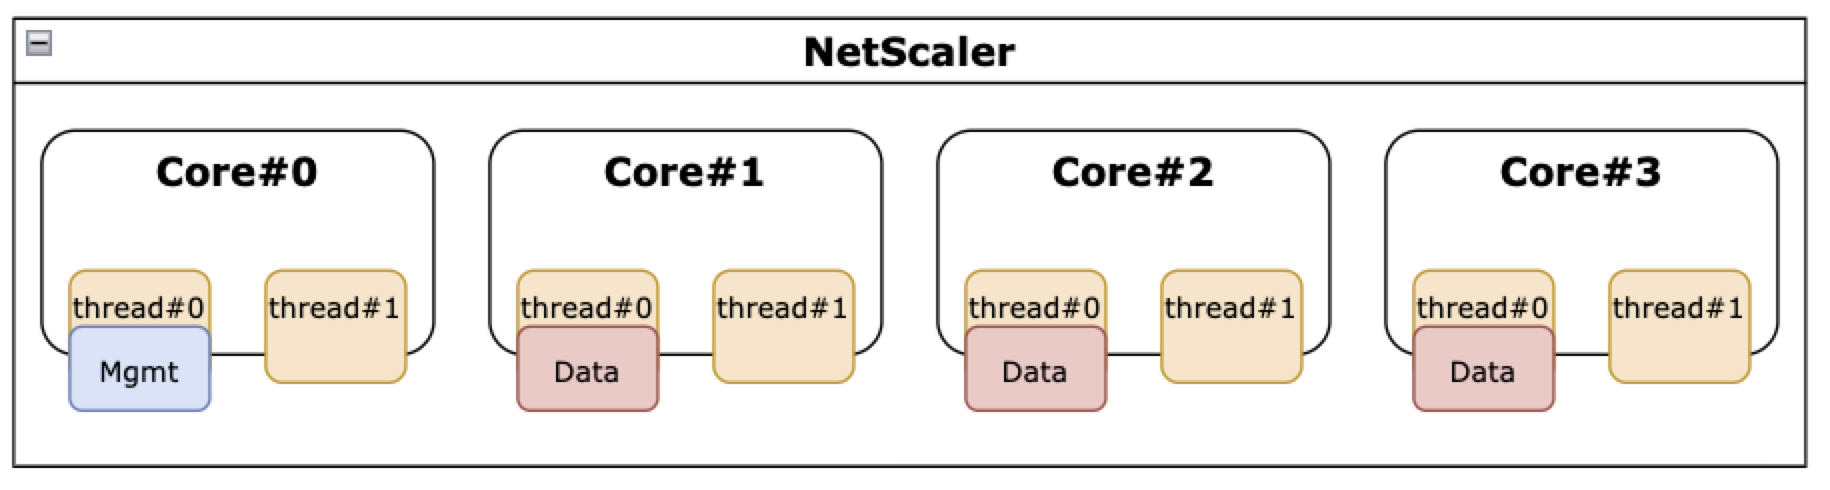 NetScaler con la función SMT desactivada